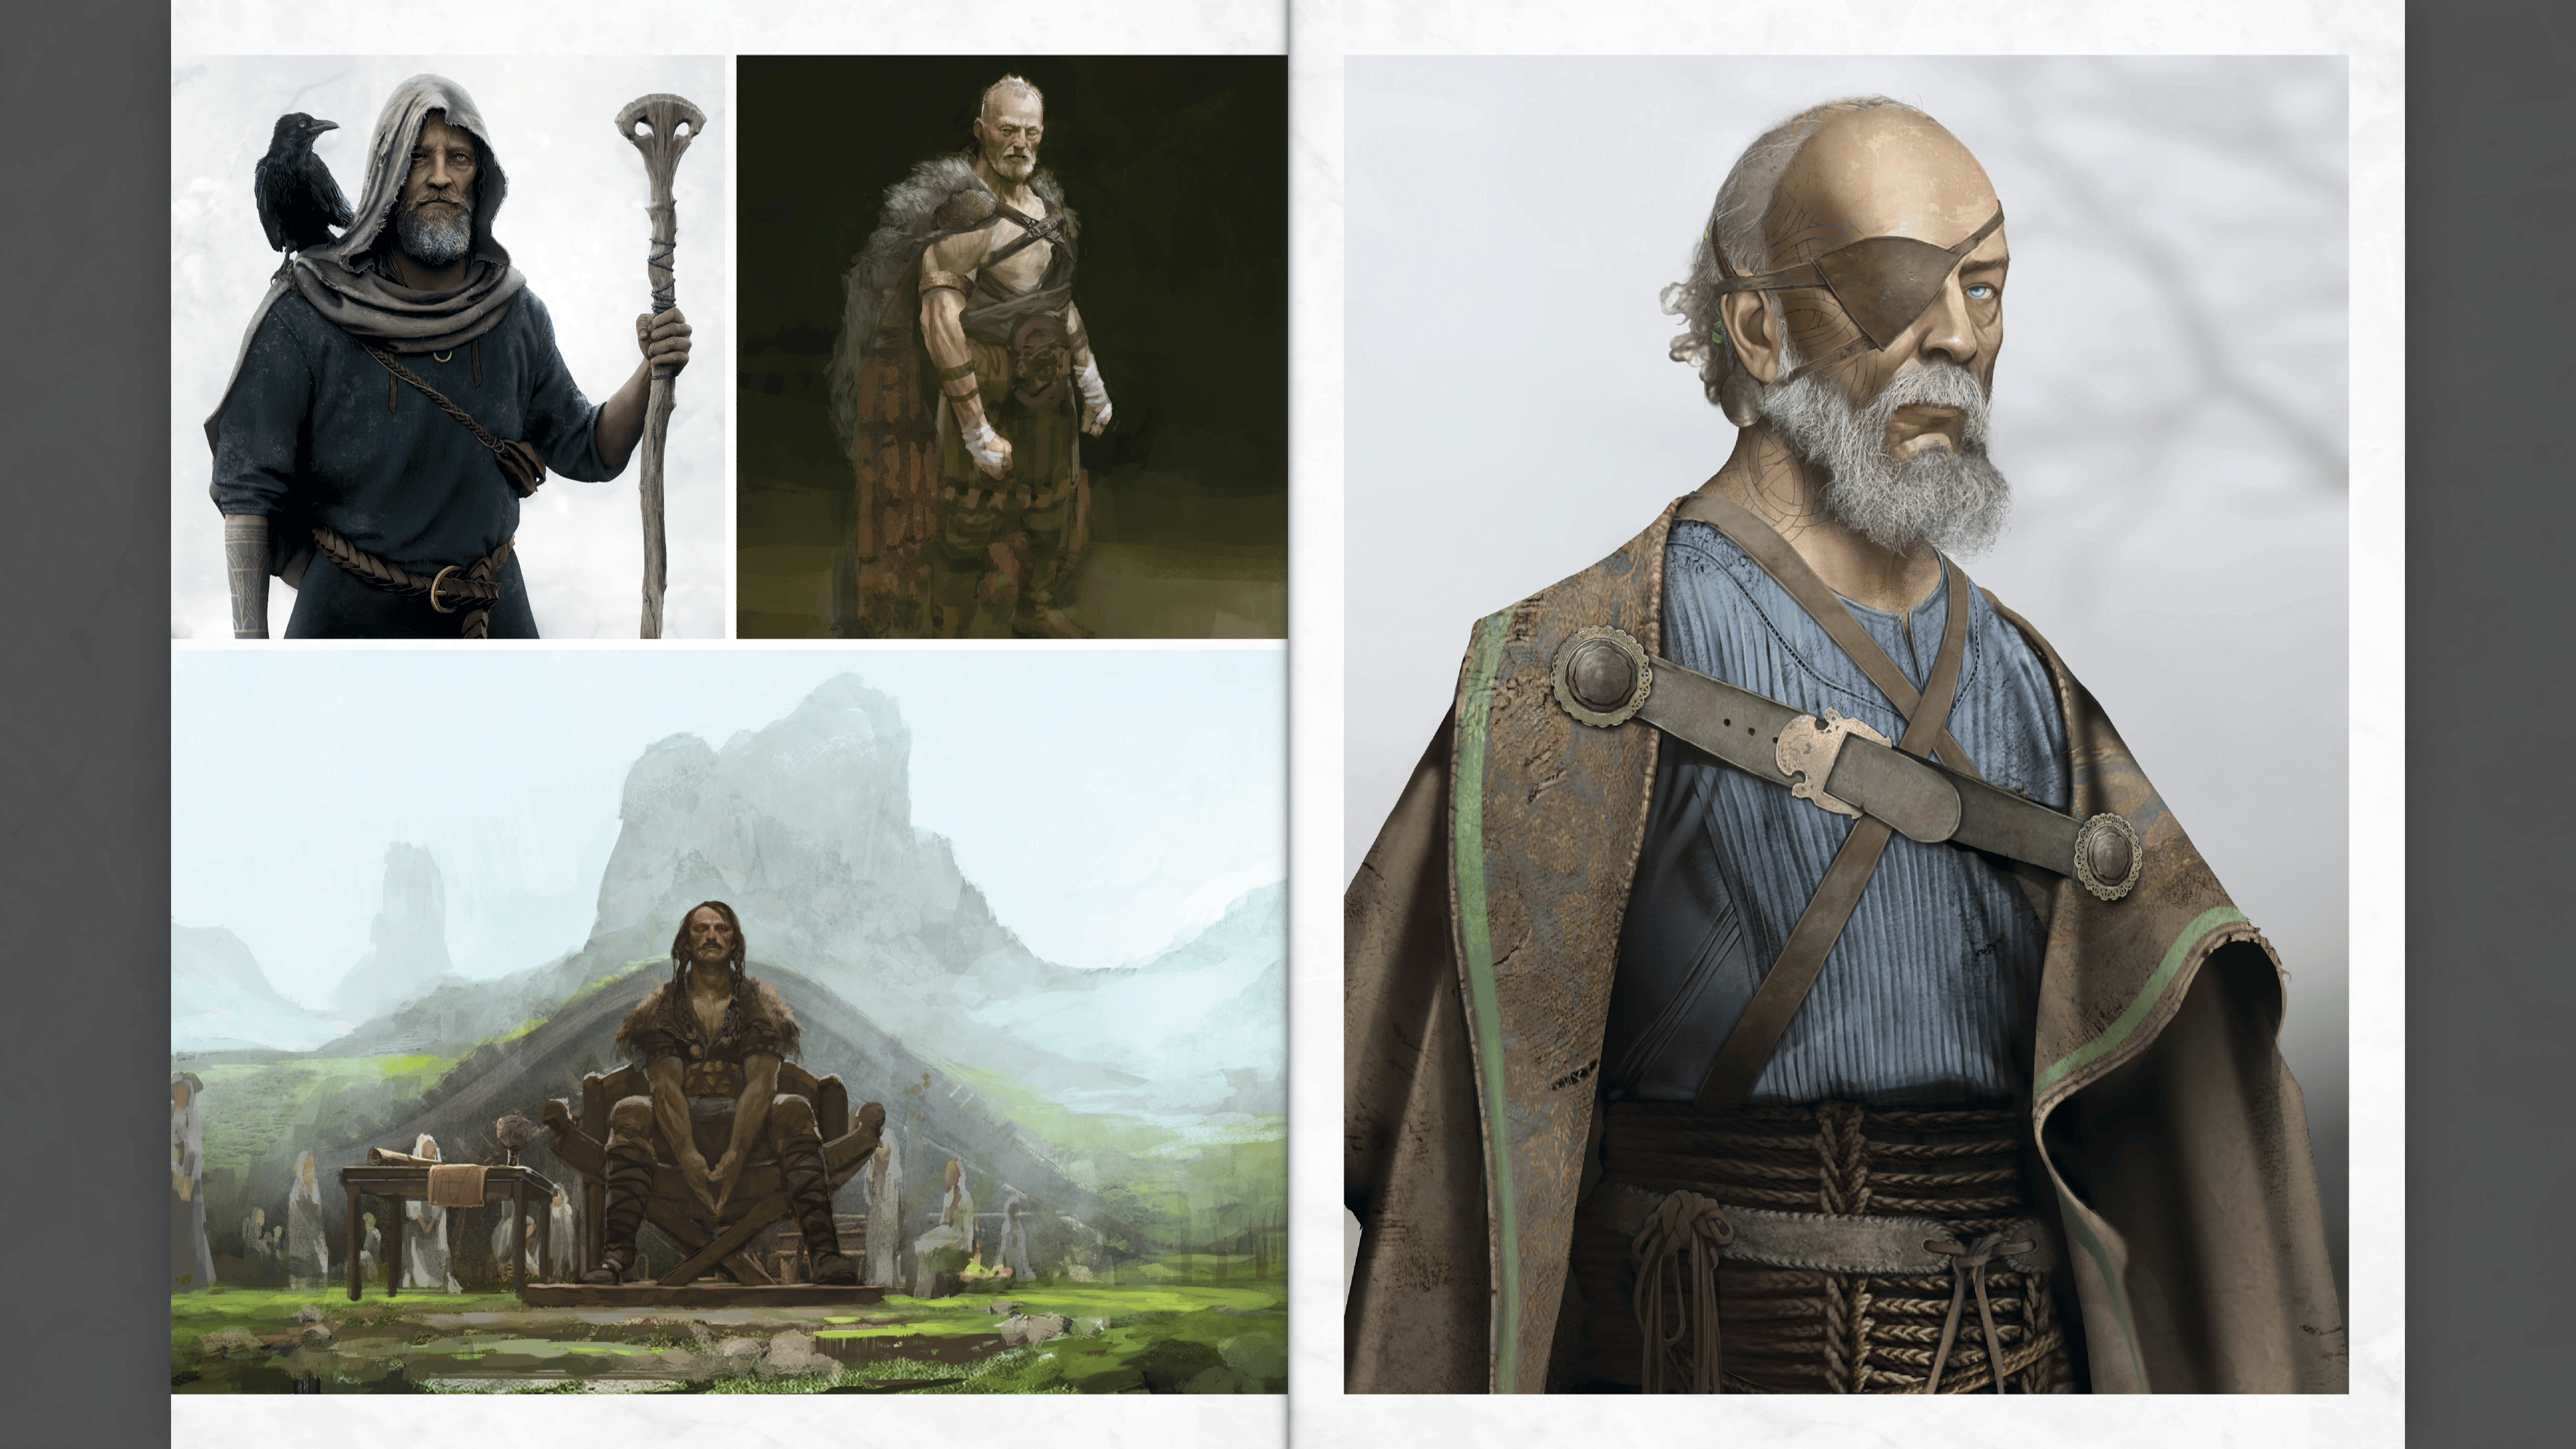 Rumor - Leaked Concept Art for Odin from GoW Ragnarok